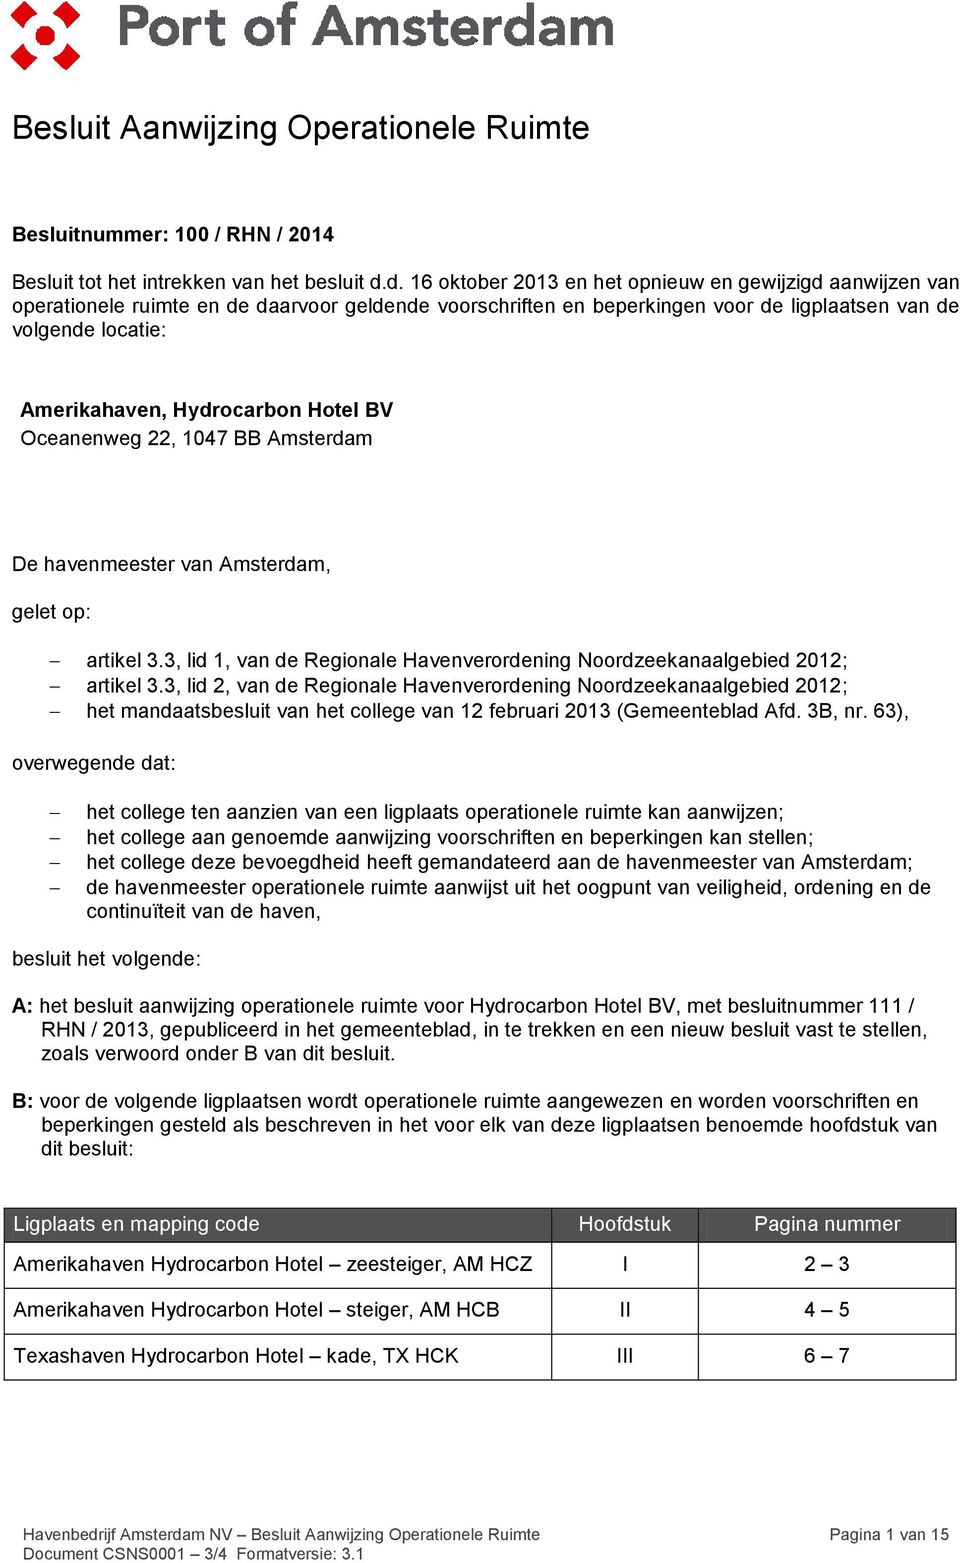 Hydrocarbon Hotel BV Oceanenweg 22, 1047 BB Amsterdam De havenmeester van Amsterdam, gelet op: artikel 3.3, lid 1, van de Regionale Havenverordening Noordzeekanaalgebied 2012; artikel 3.